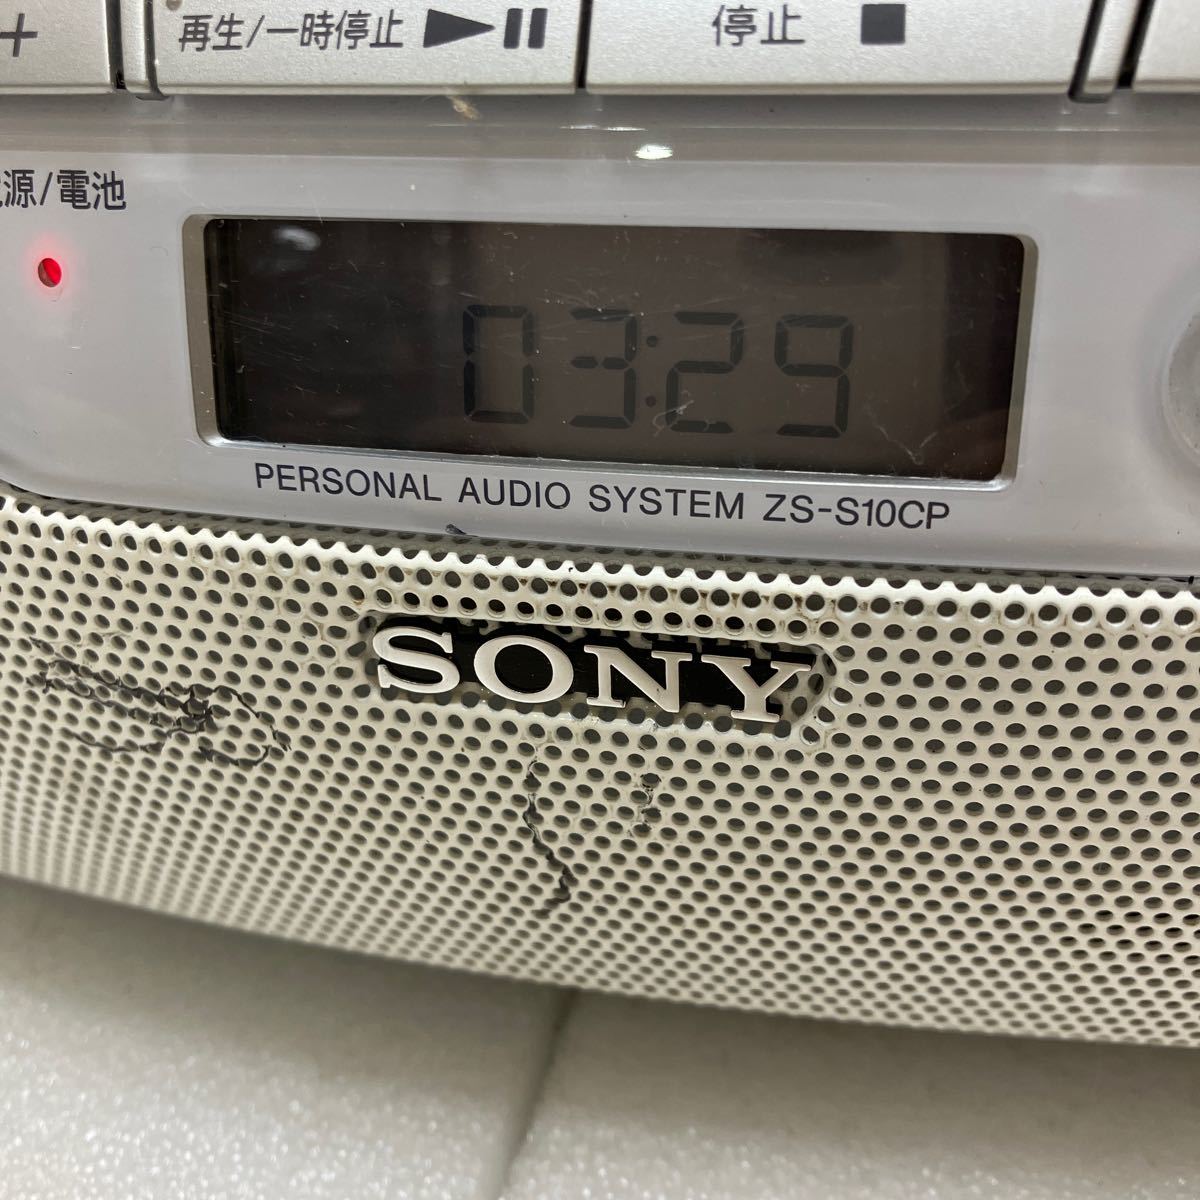 MK5180 #SONY ZS-S10CP CD радио Sony AM/FM CD-R/RW шнур электропитания имеется рабочий товар трещина есть 20231204